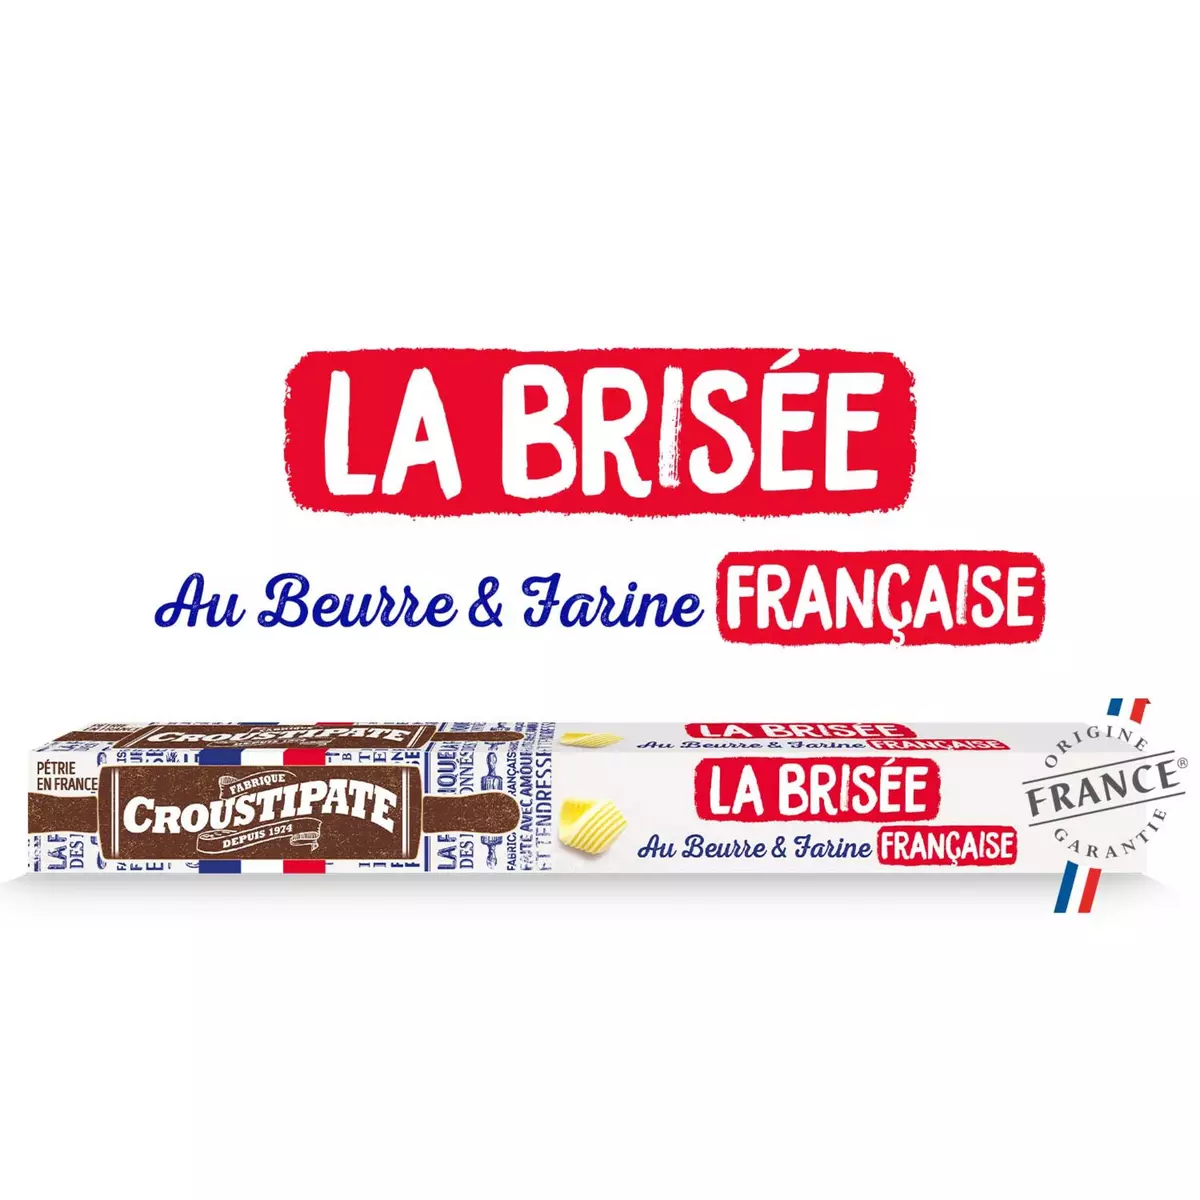 CROUSTIPATE Pâte brisée beurre et farine Française 230g